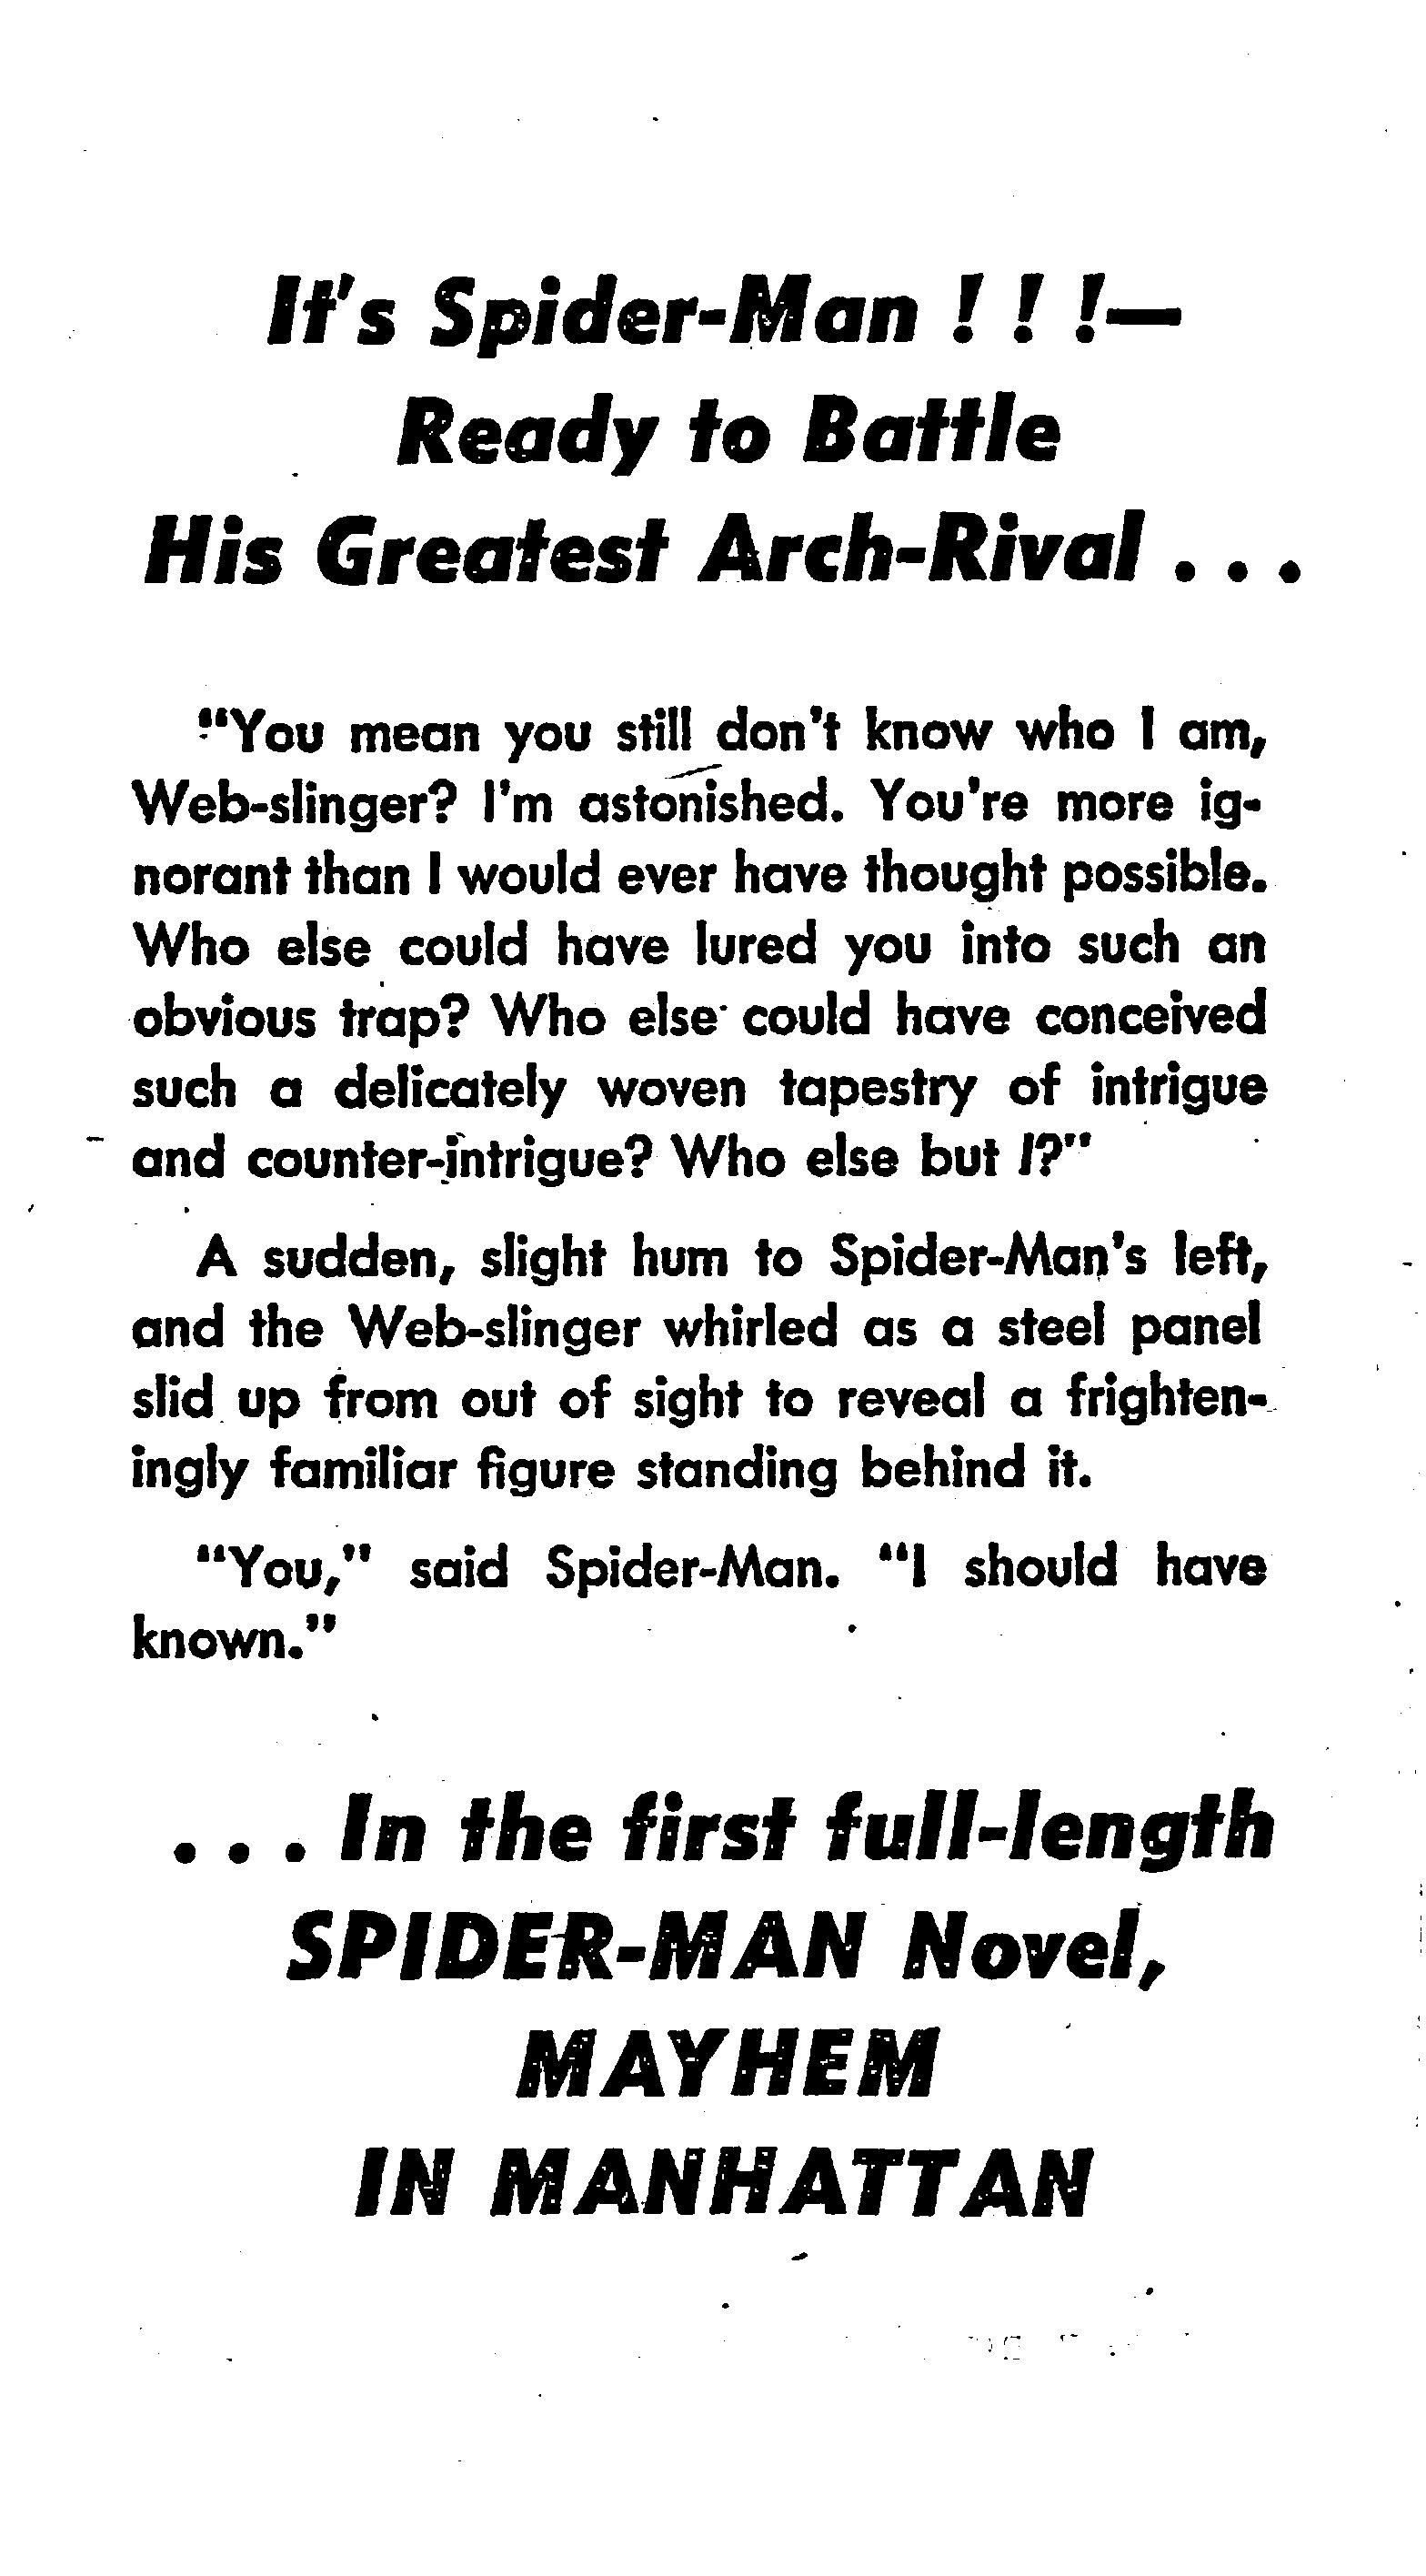 Read online The Amazing Spider-Man: Mayhem in Manhattan comic -  Issue # TPB (Part 1) - 2